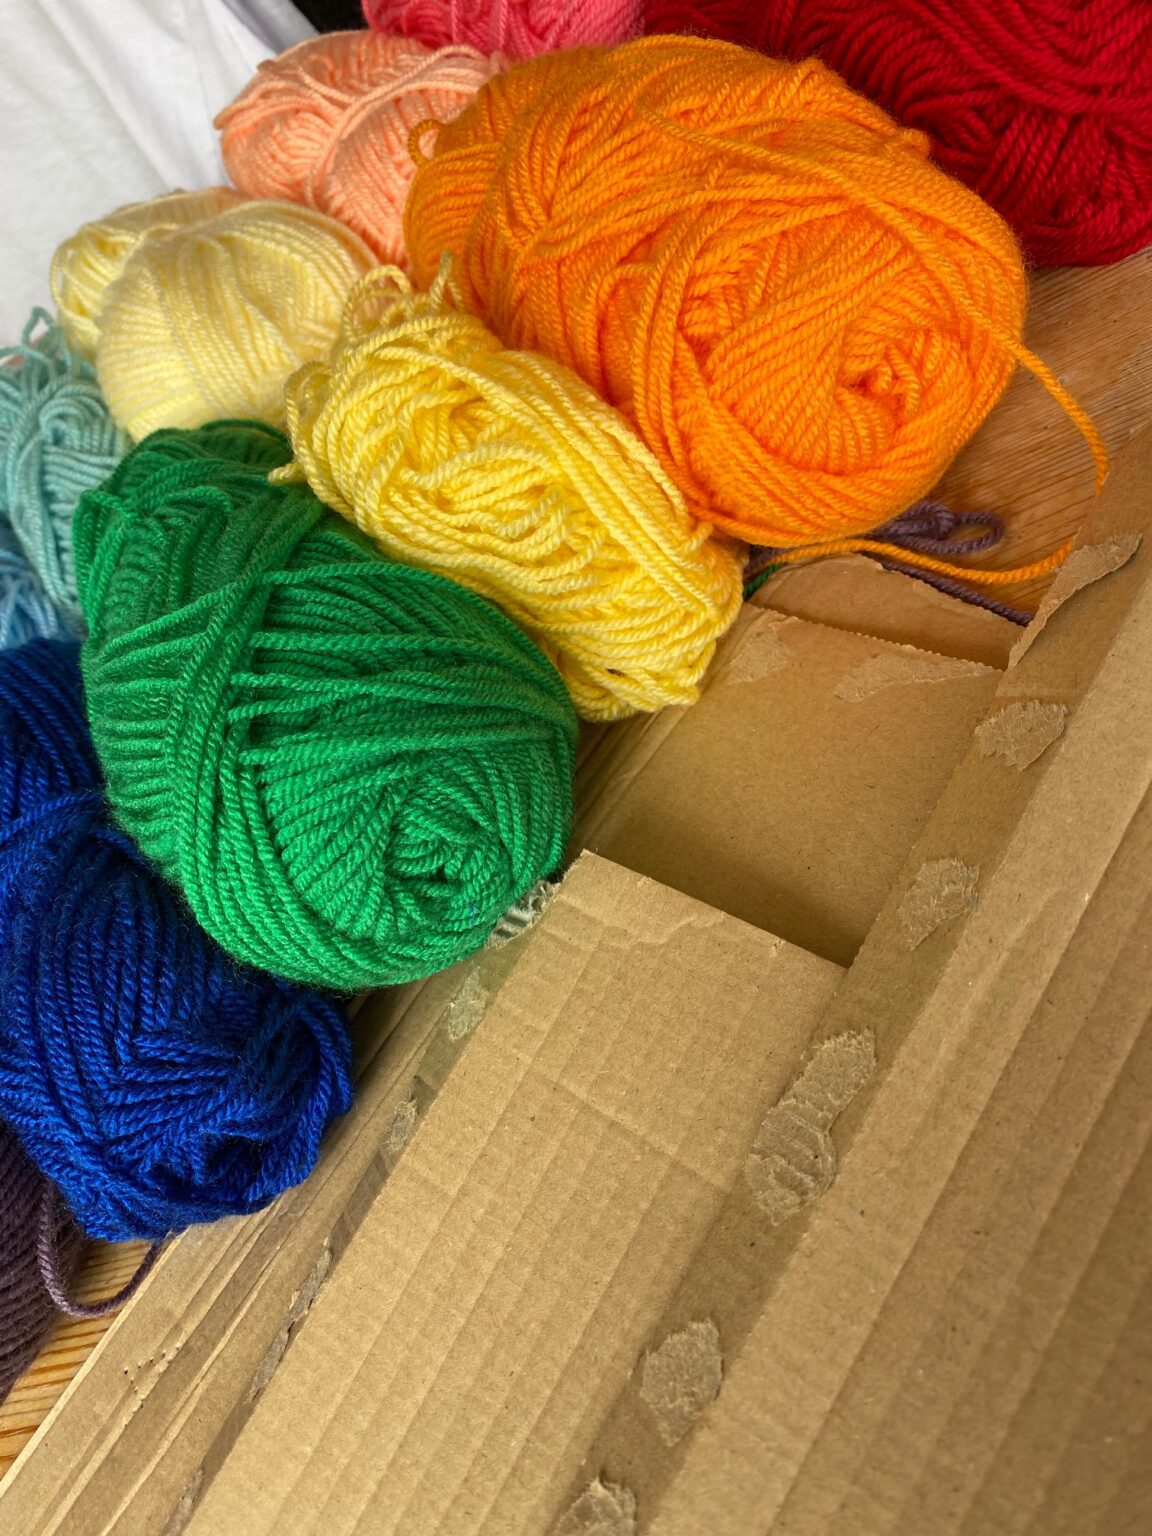 Bright rainbow yarn and cardboard all ready to go.